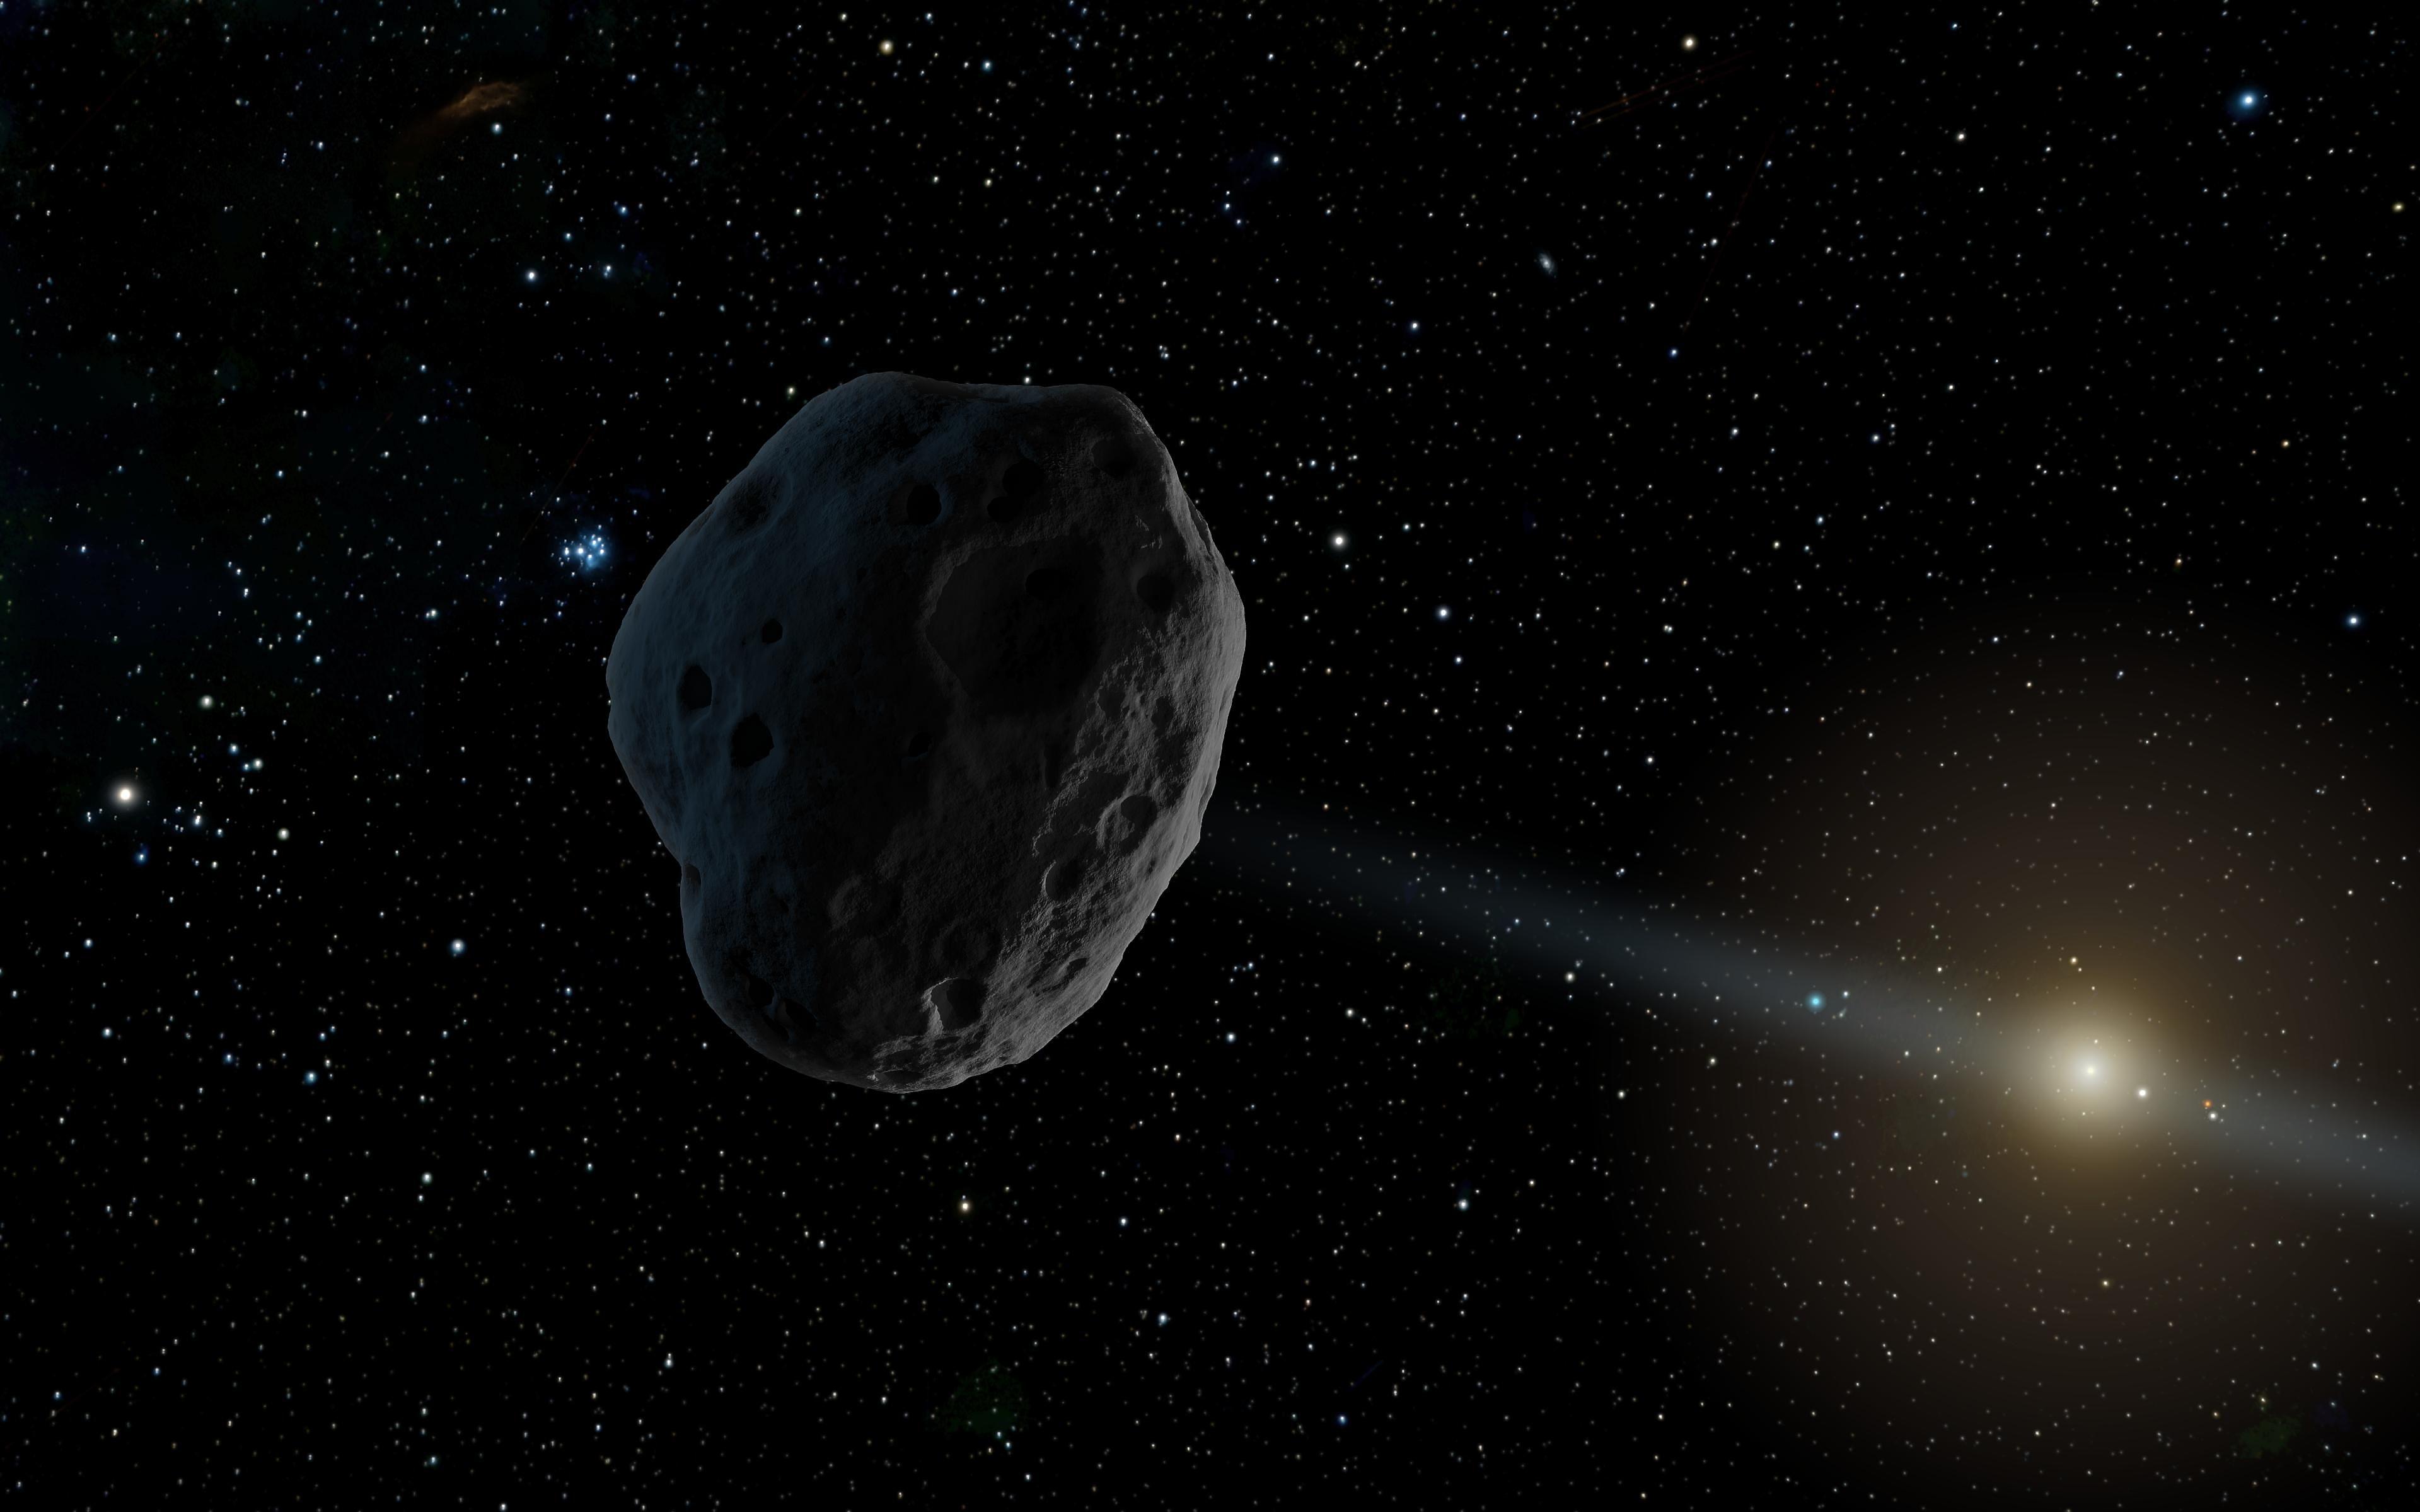 El asteroide 2018 VP1 no supone ninguna amenaza